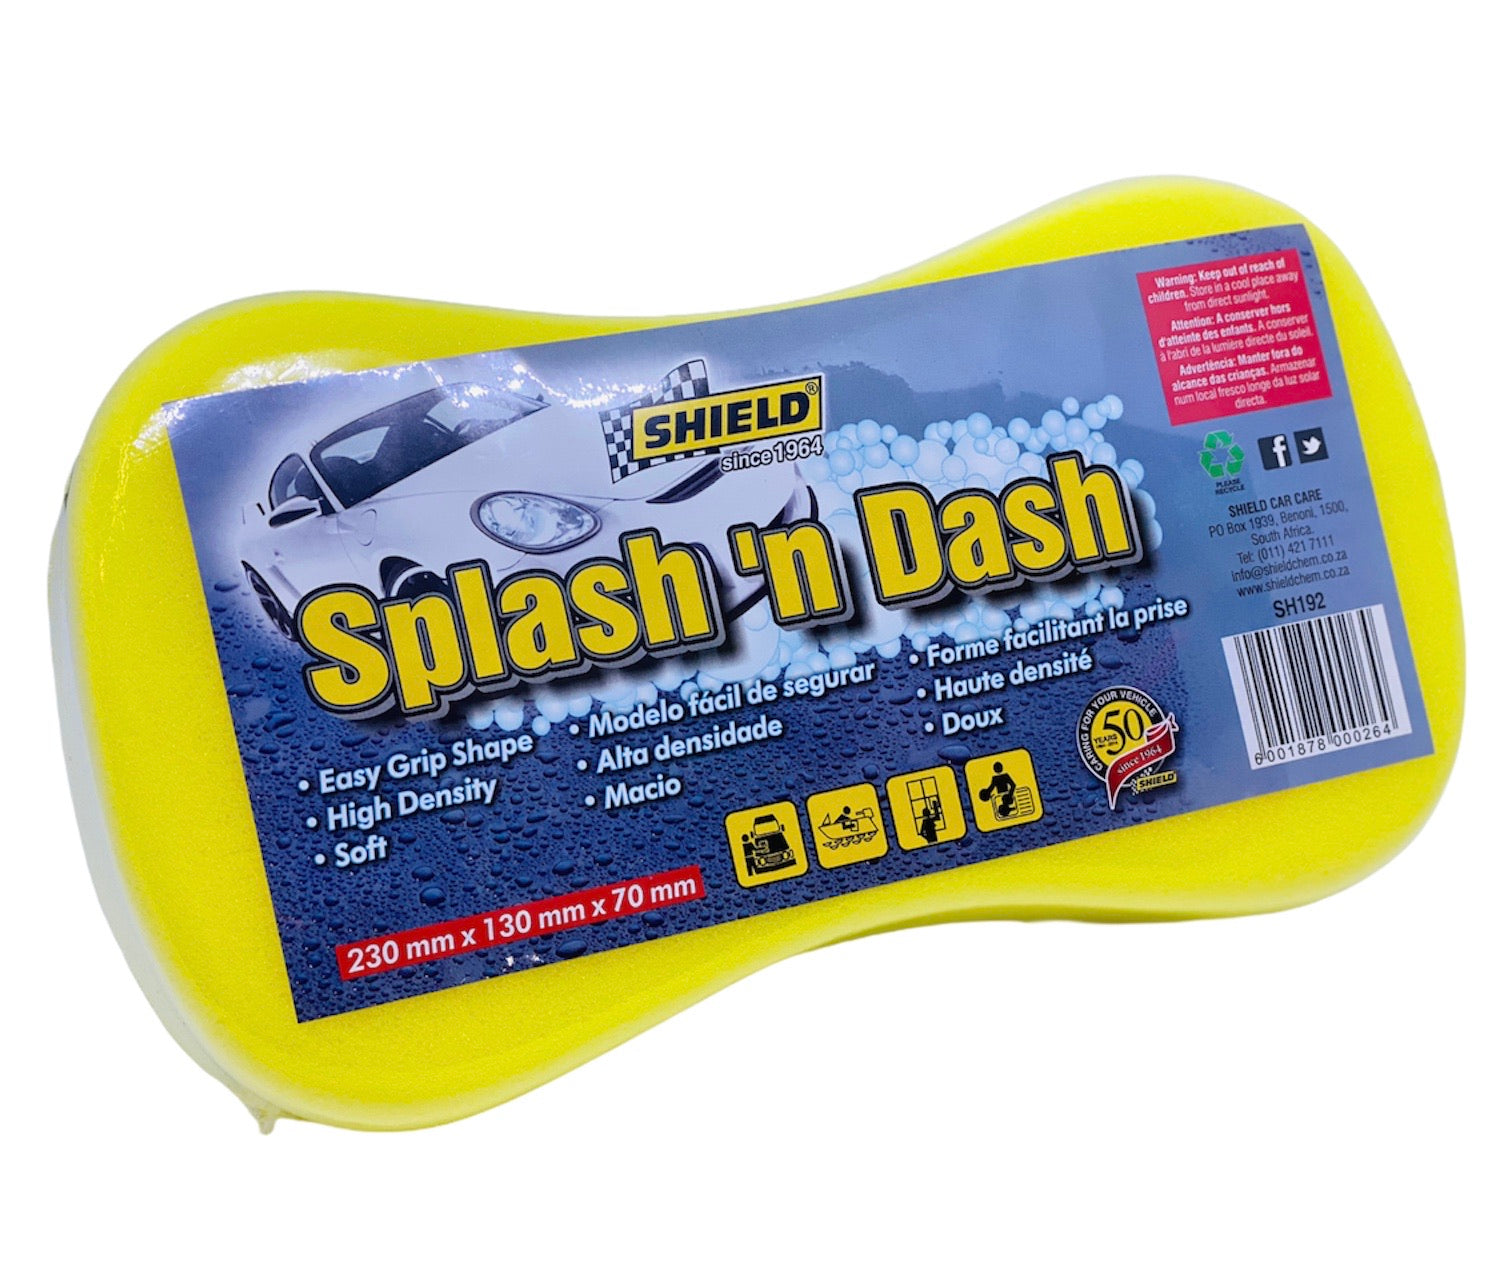 SHIELD SPLASH ‘N DASH AUTO SPONGE